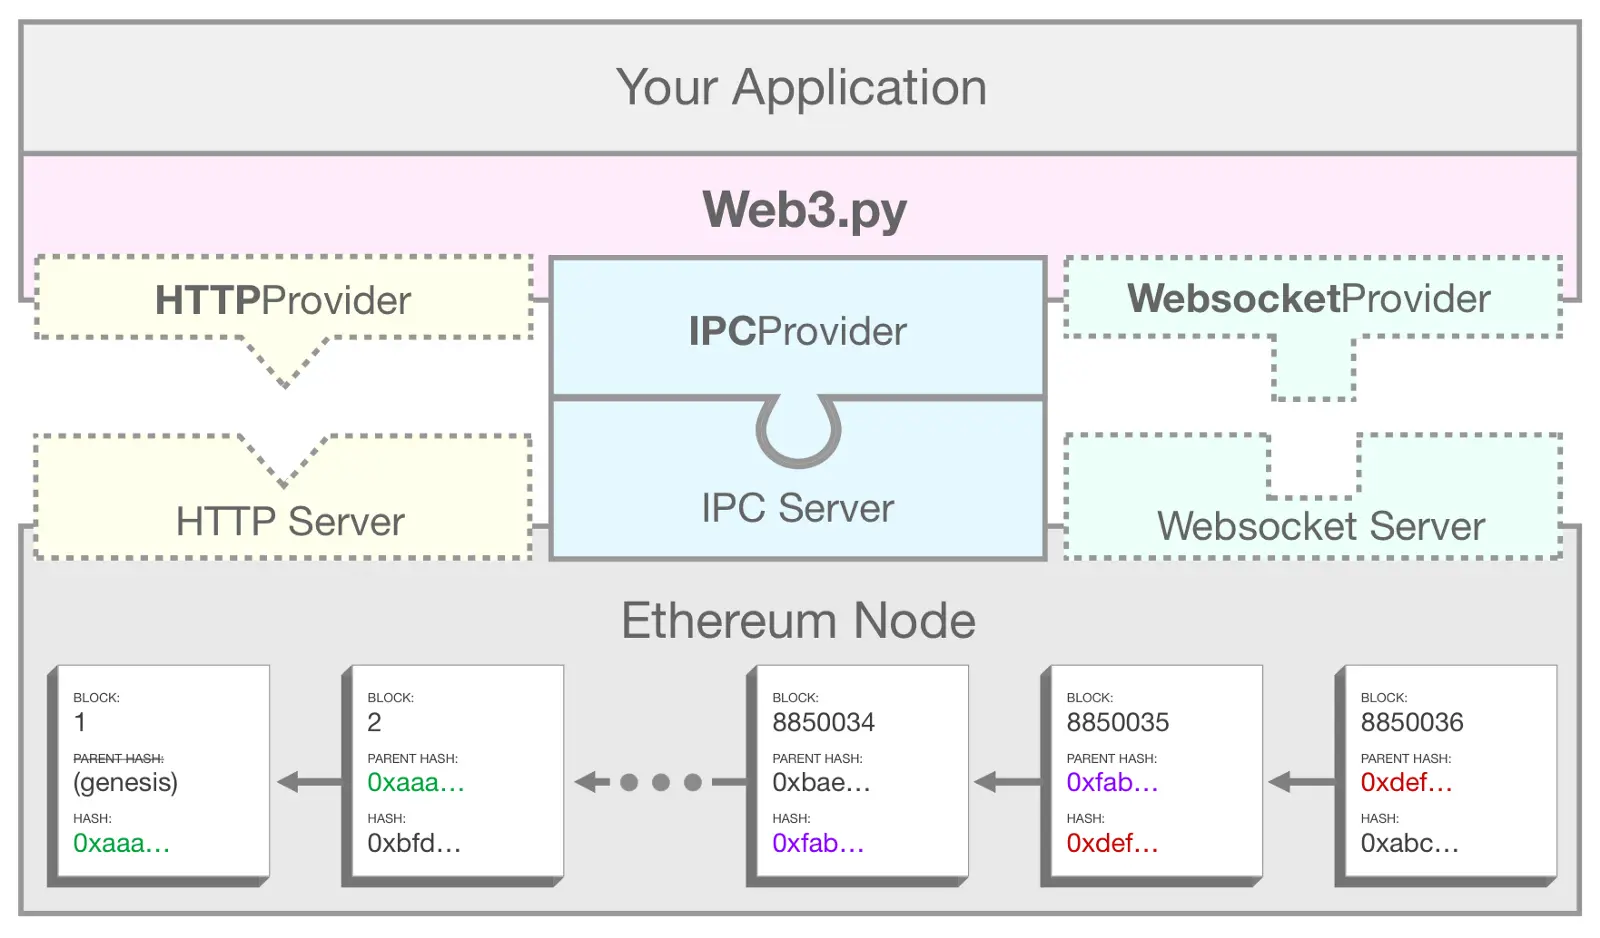 Un diagramme montrant comment web3.py utilise IPC pour connecter votre application à un nœud Ethereum